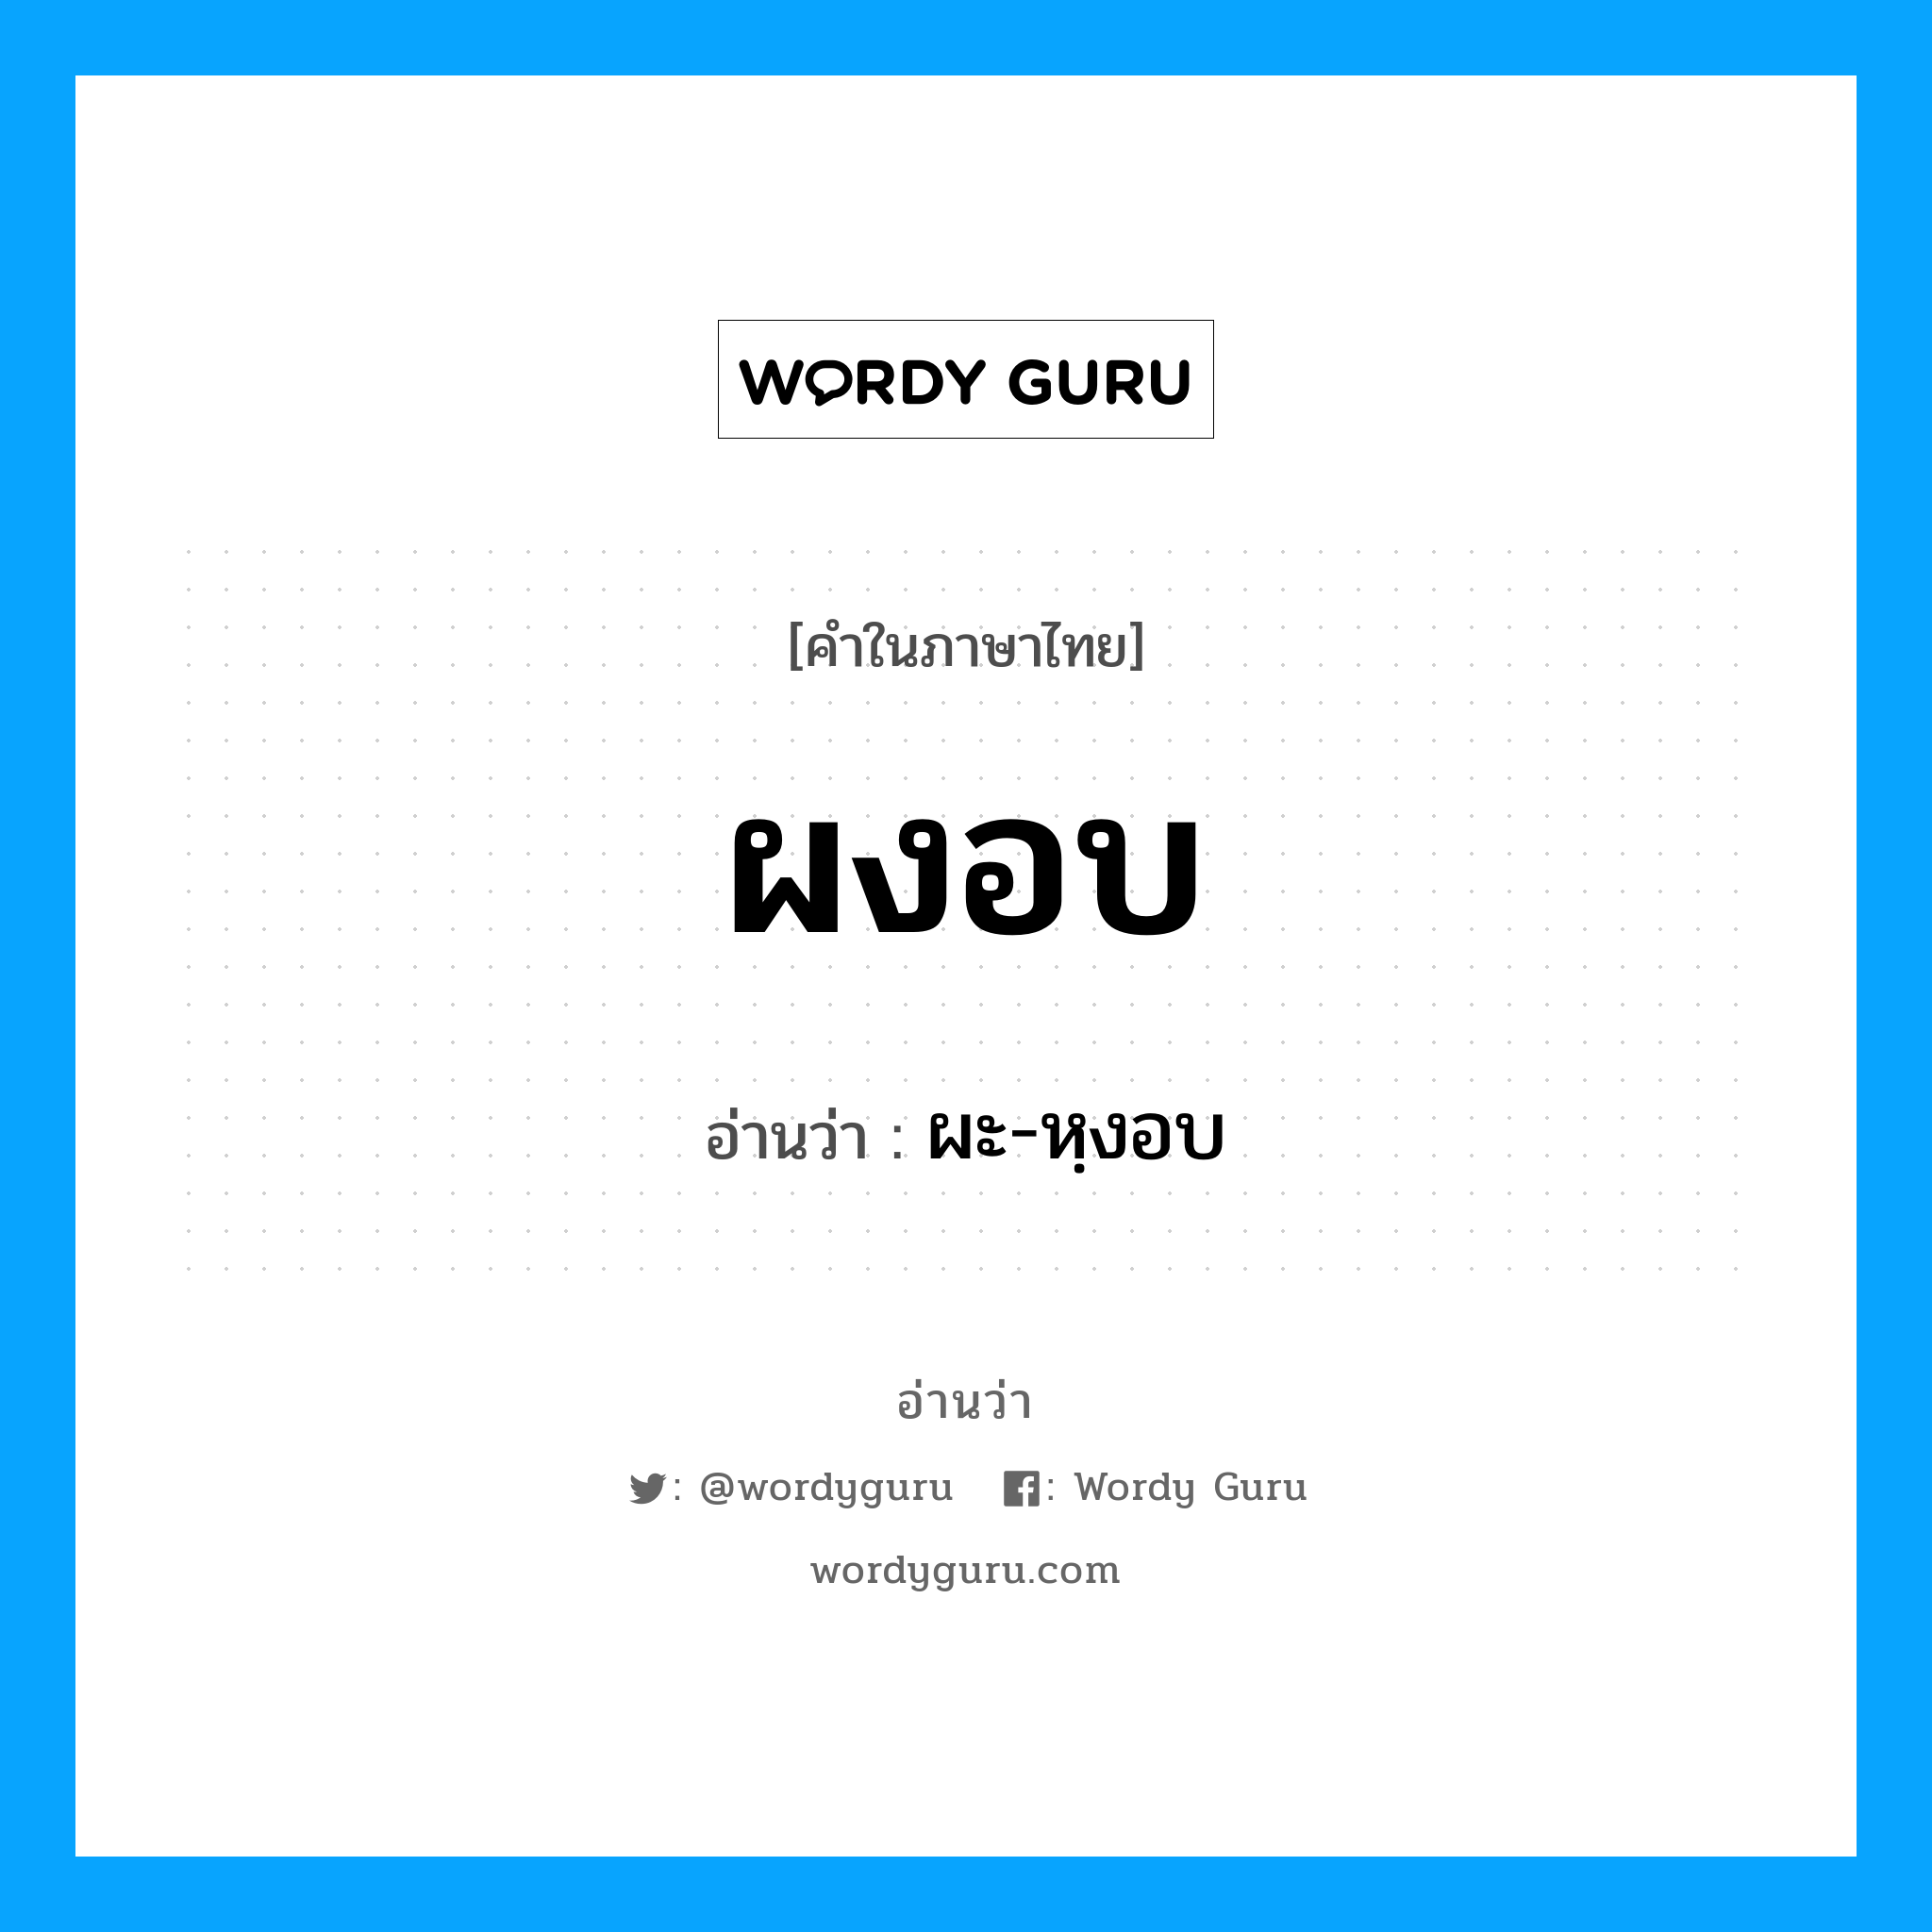 ผะ-หฺงอบ เป็นคำอ่านของคำไหน?, คำในภาษาไทย ผะ-หฺงอบ อ่านว่า ผงอบ